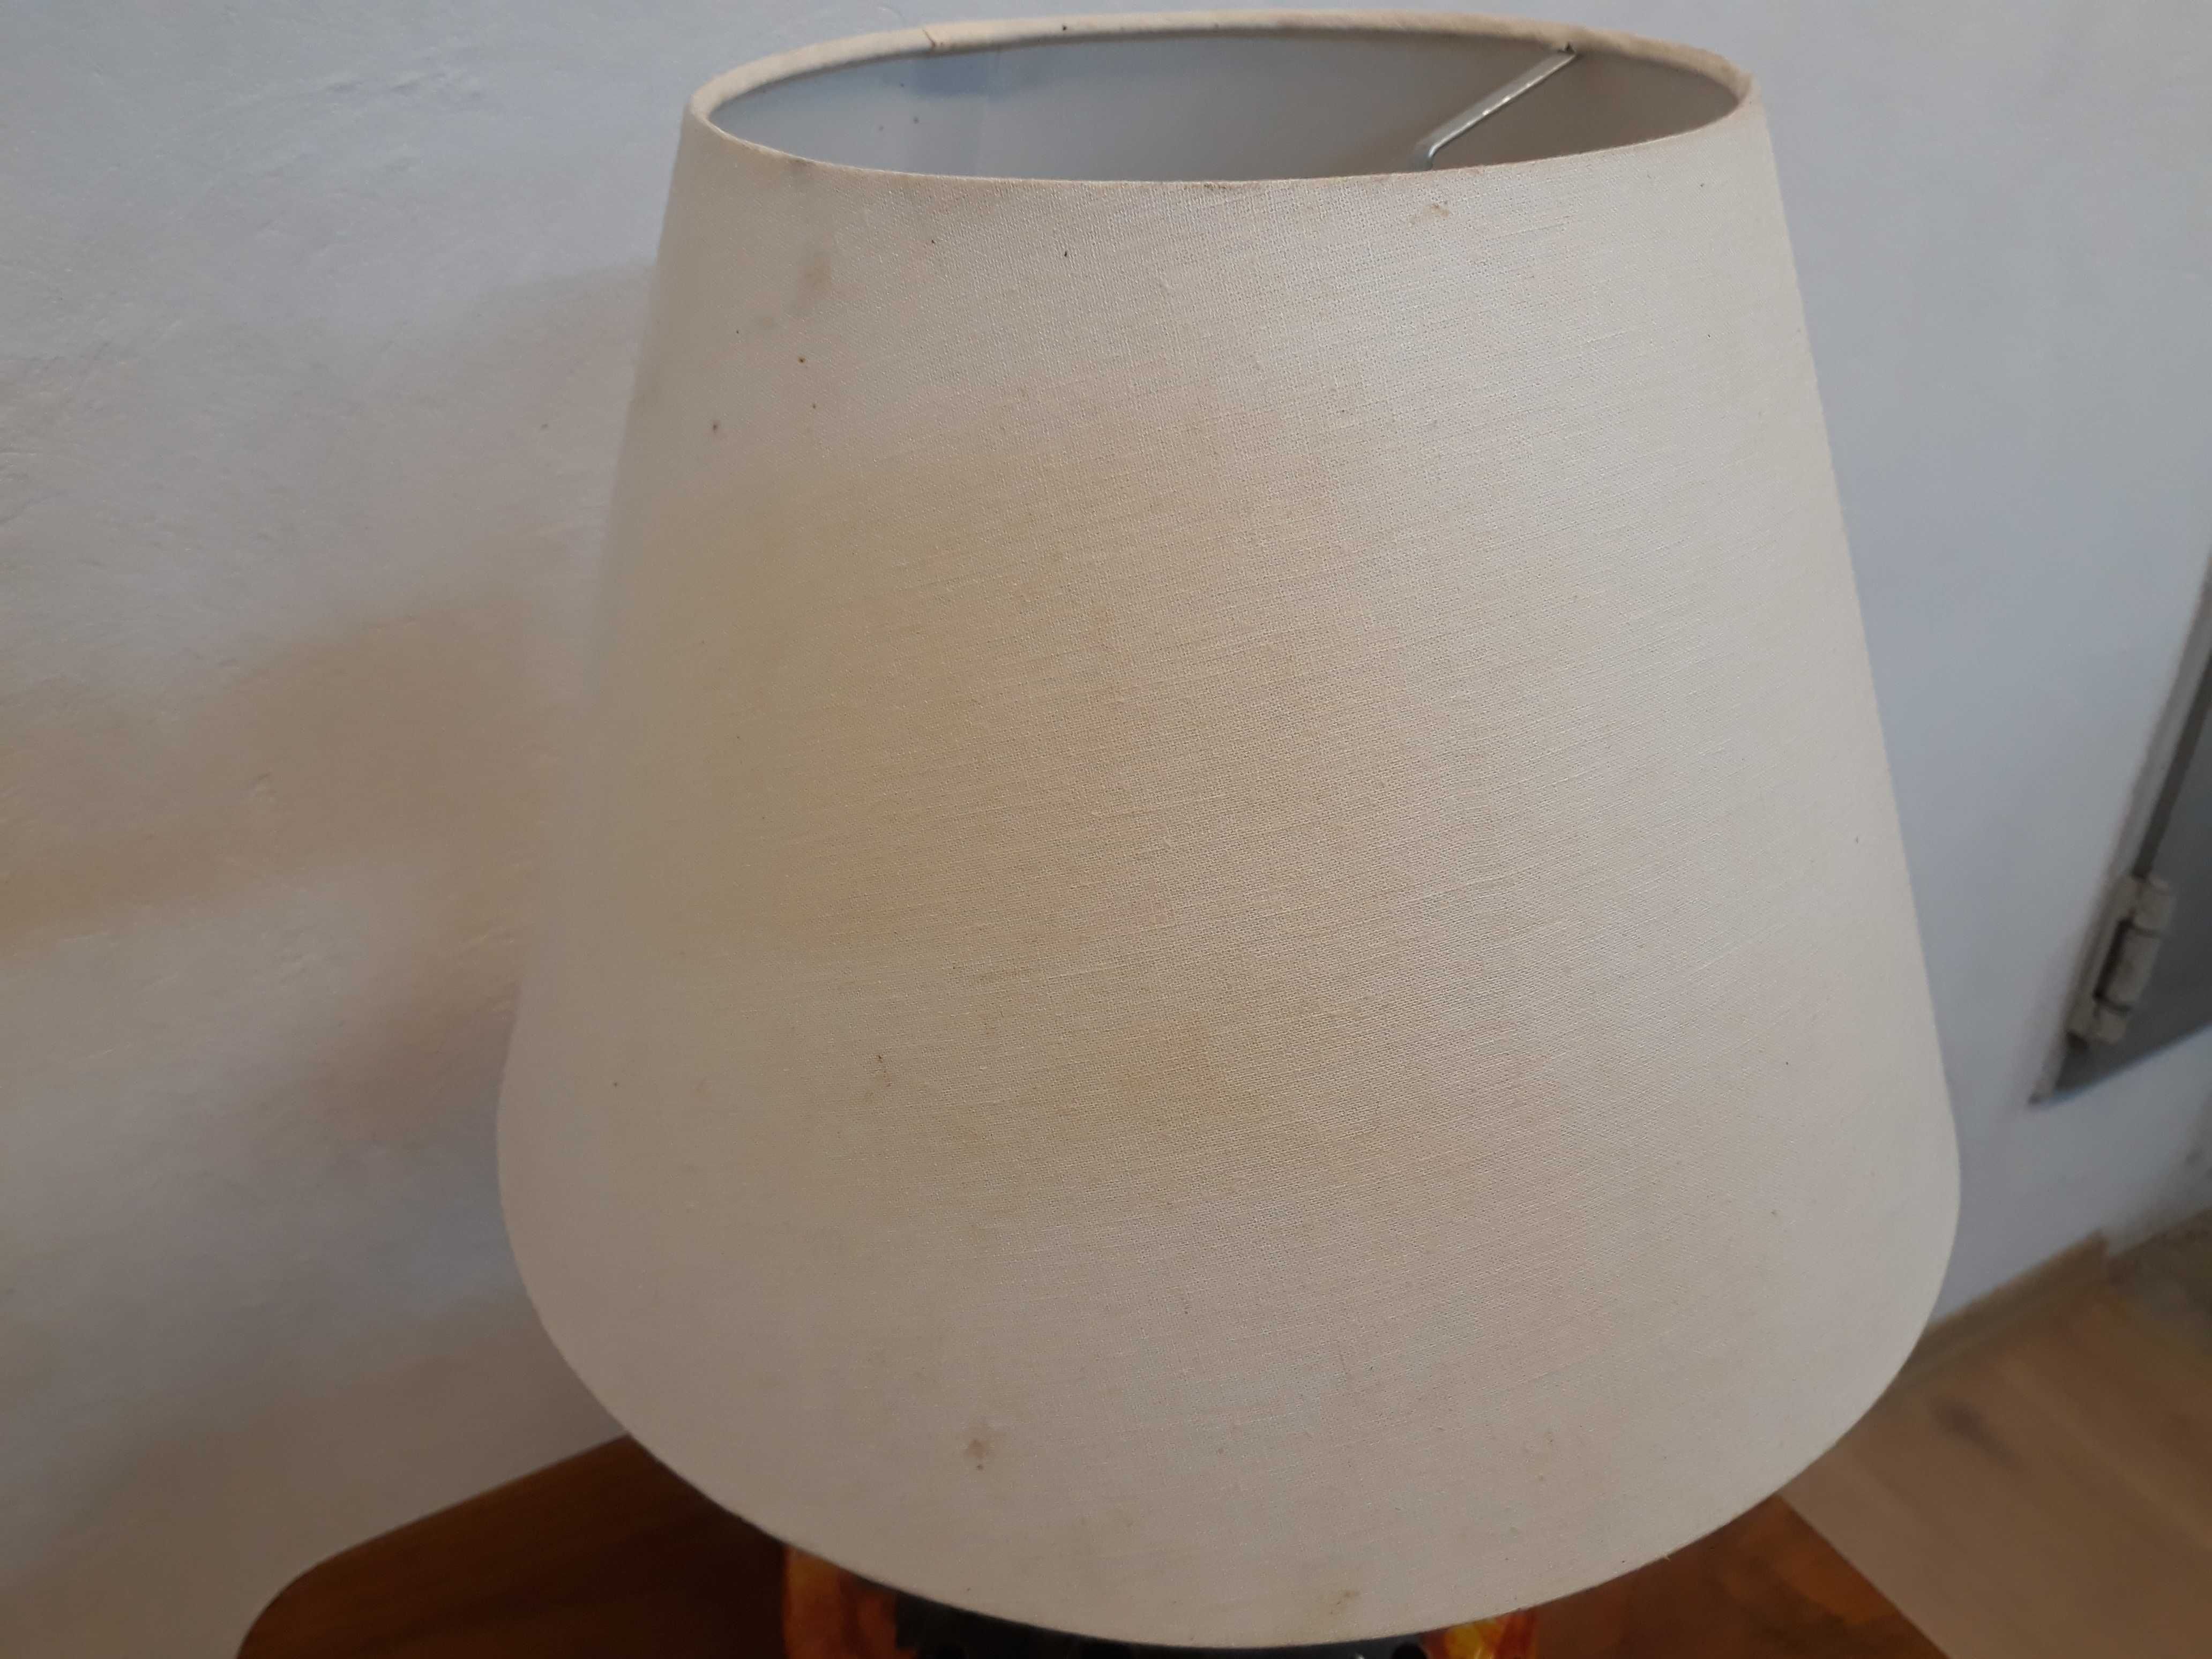 Lampa stołowa ceramiczna lawa z abażurem ażurowa 2 źródła światła